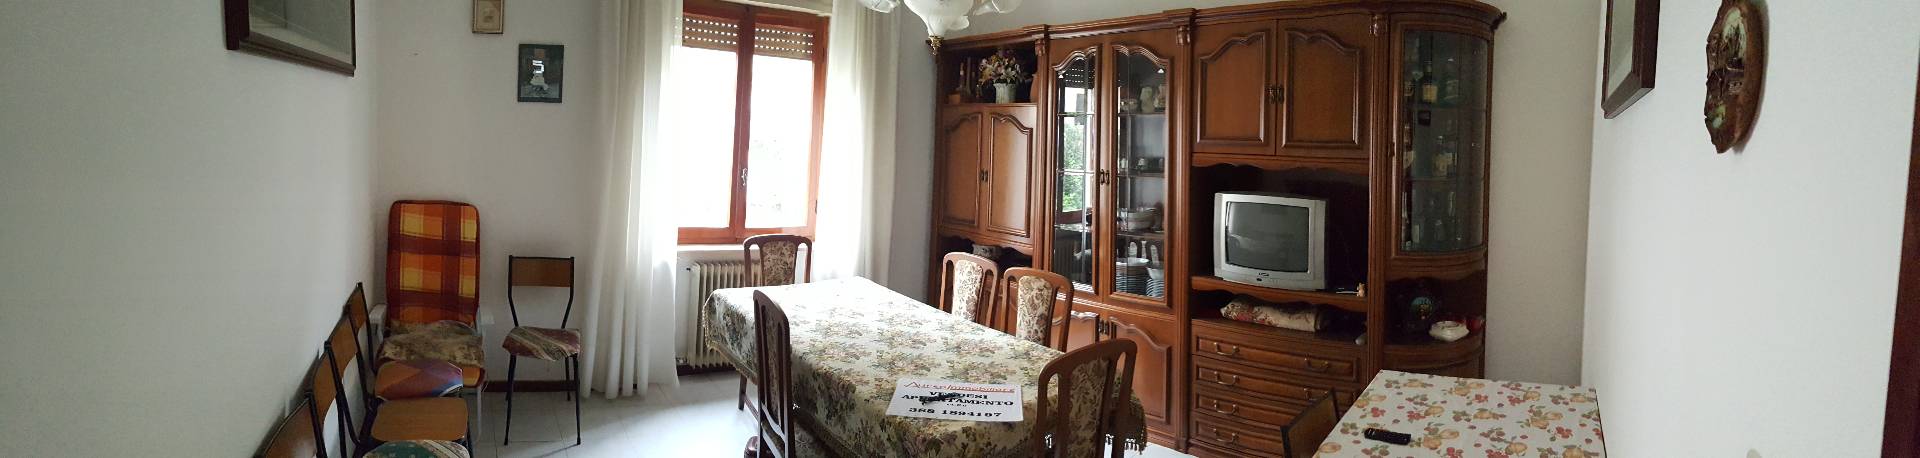 Appartamento in vendita a Roccafluvione, 5 locali, prezzo € 60.000 | CambioCasa.it